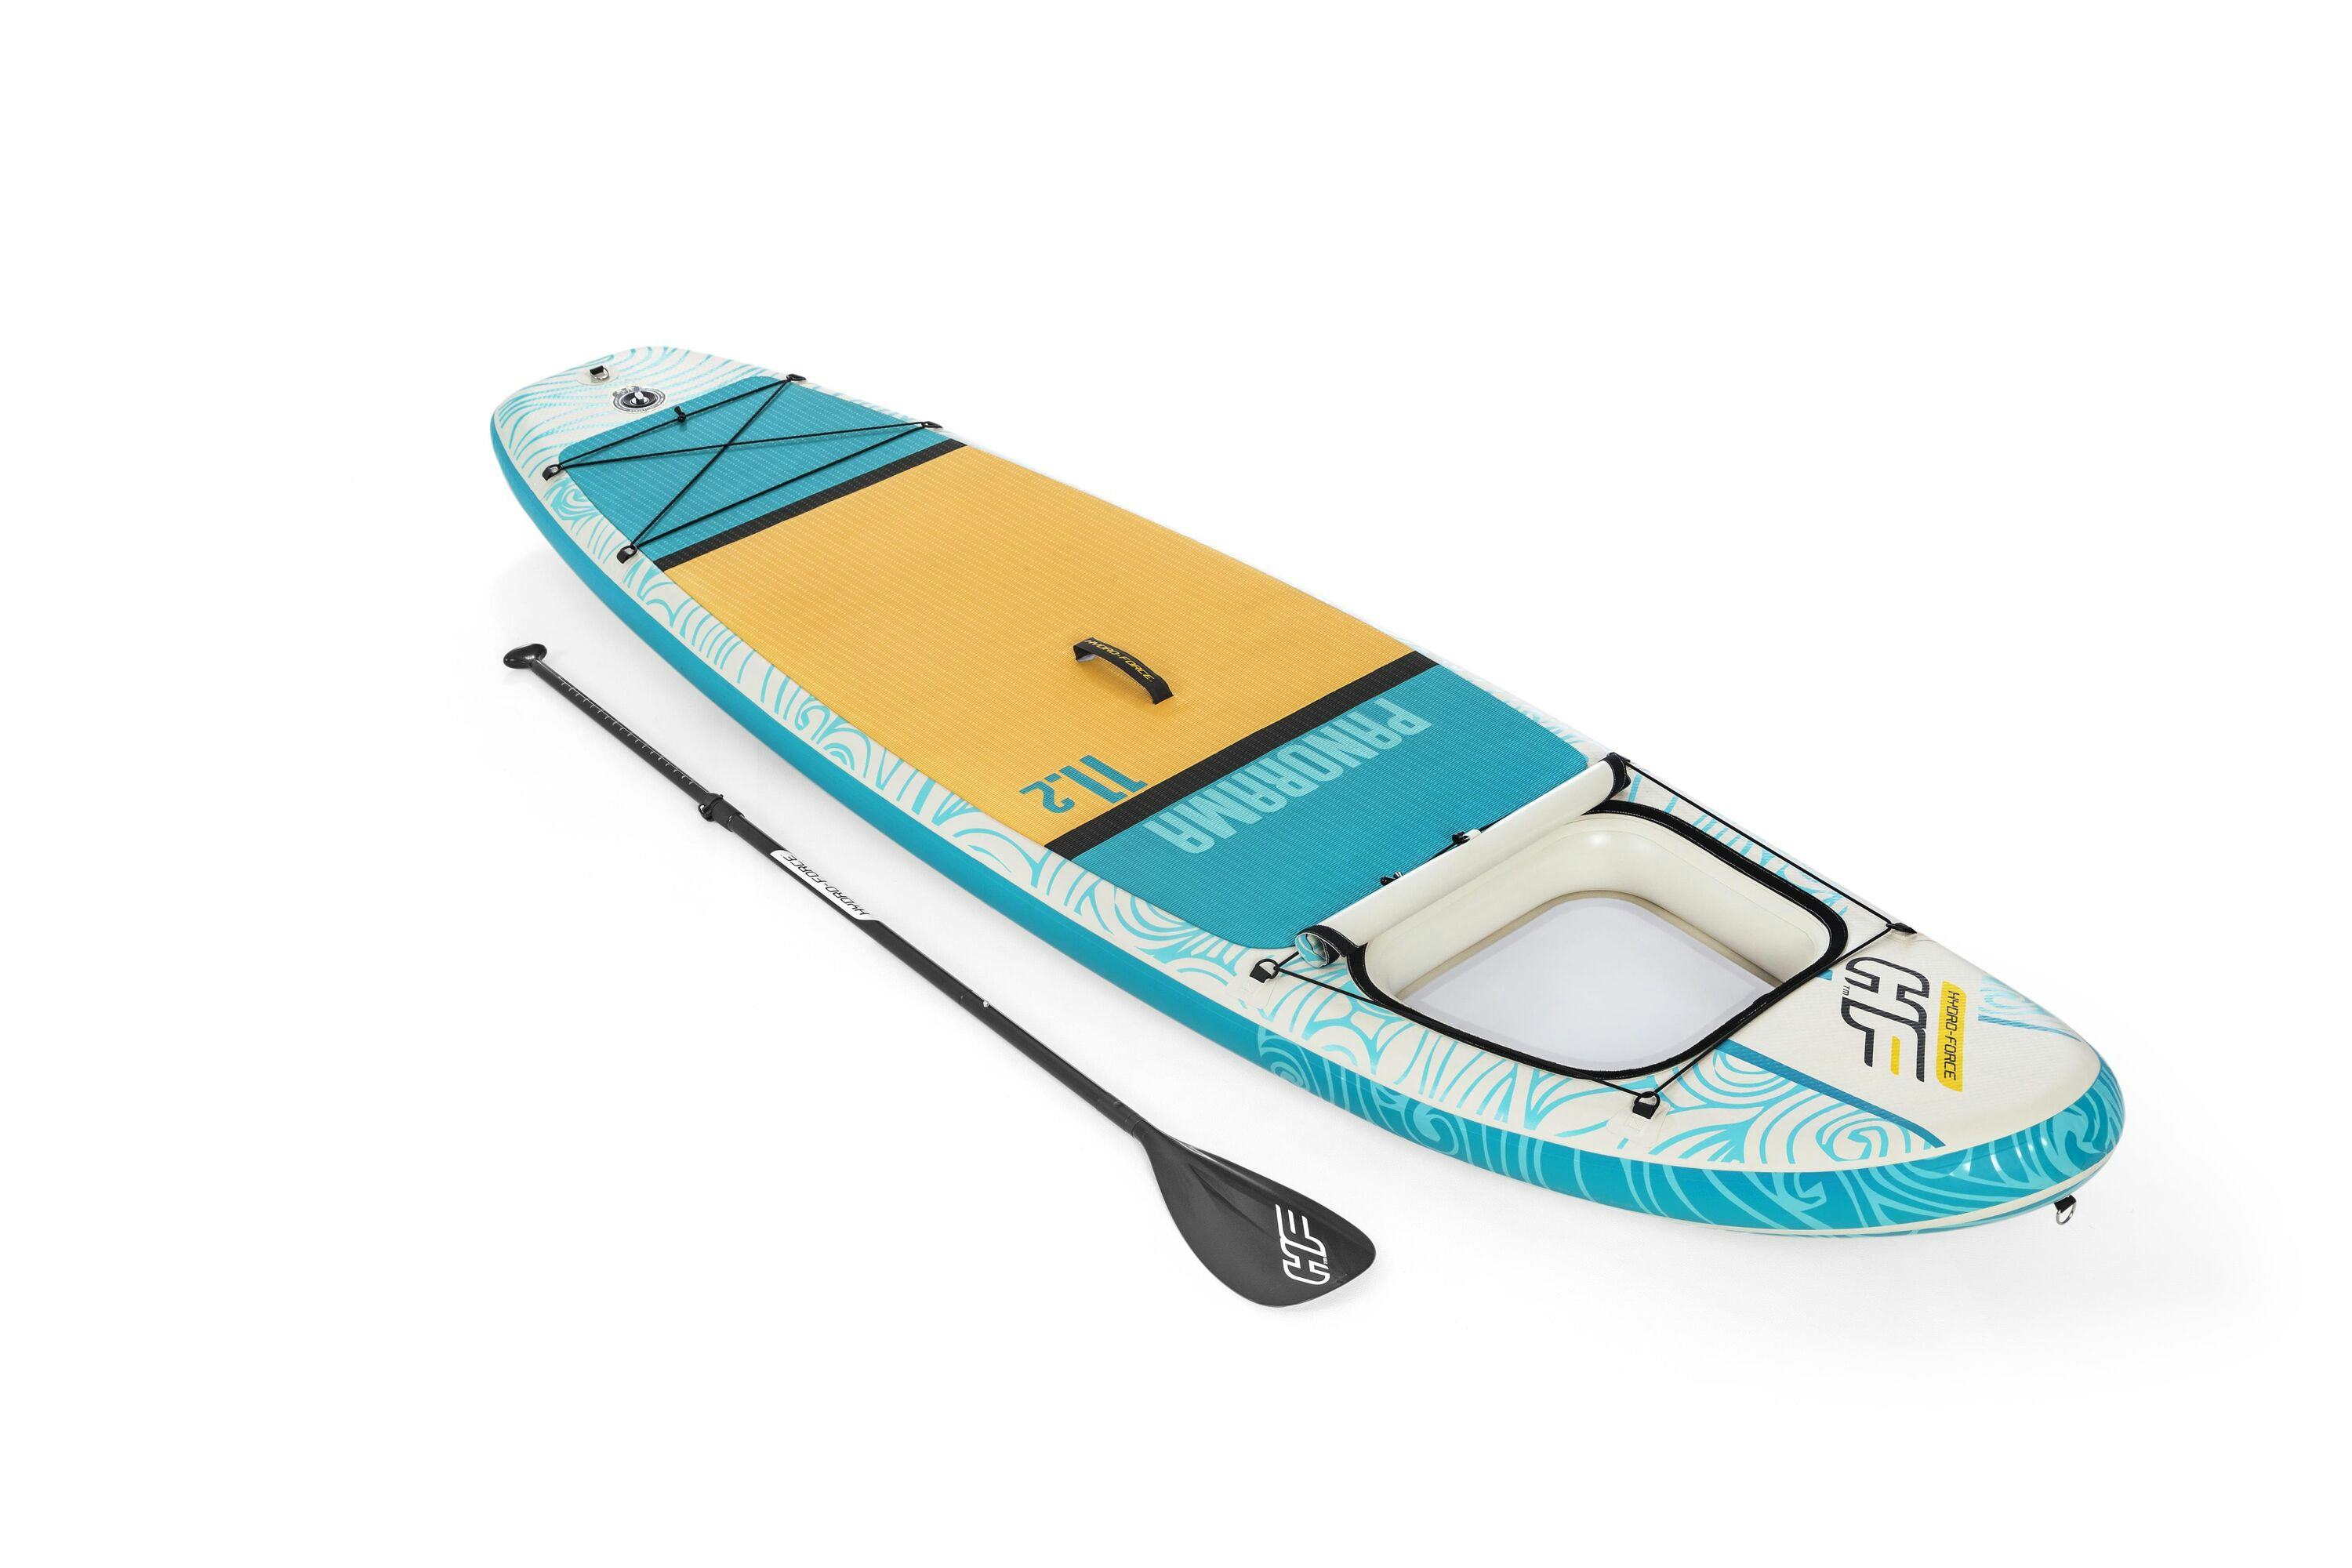 Sports d'eau Paddle gonflable Panorama Hydro-force 340 x 89 x 15 cm avec hublott Bestway 1